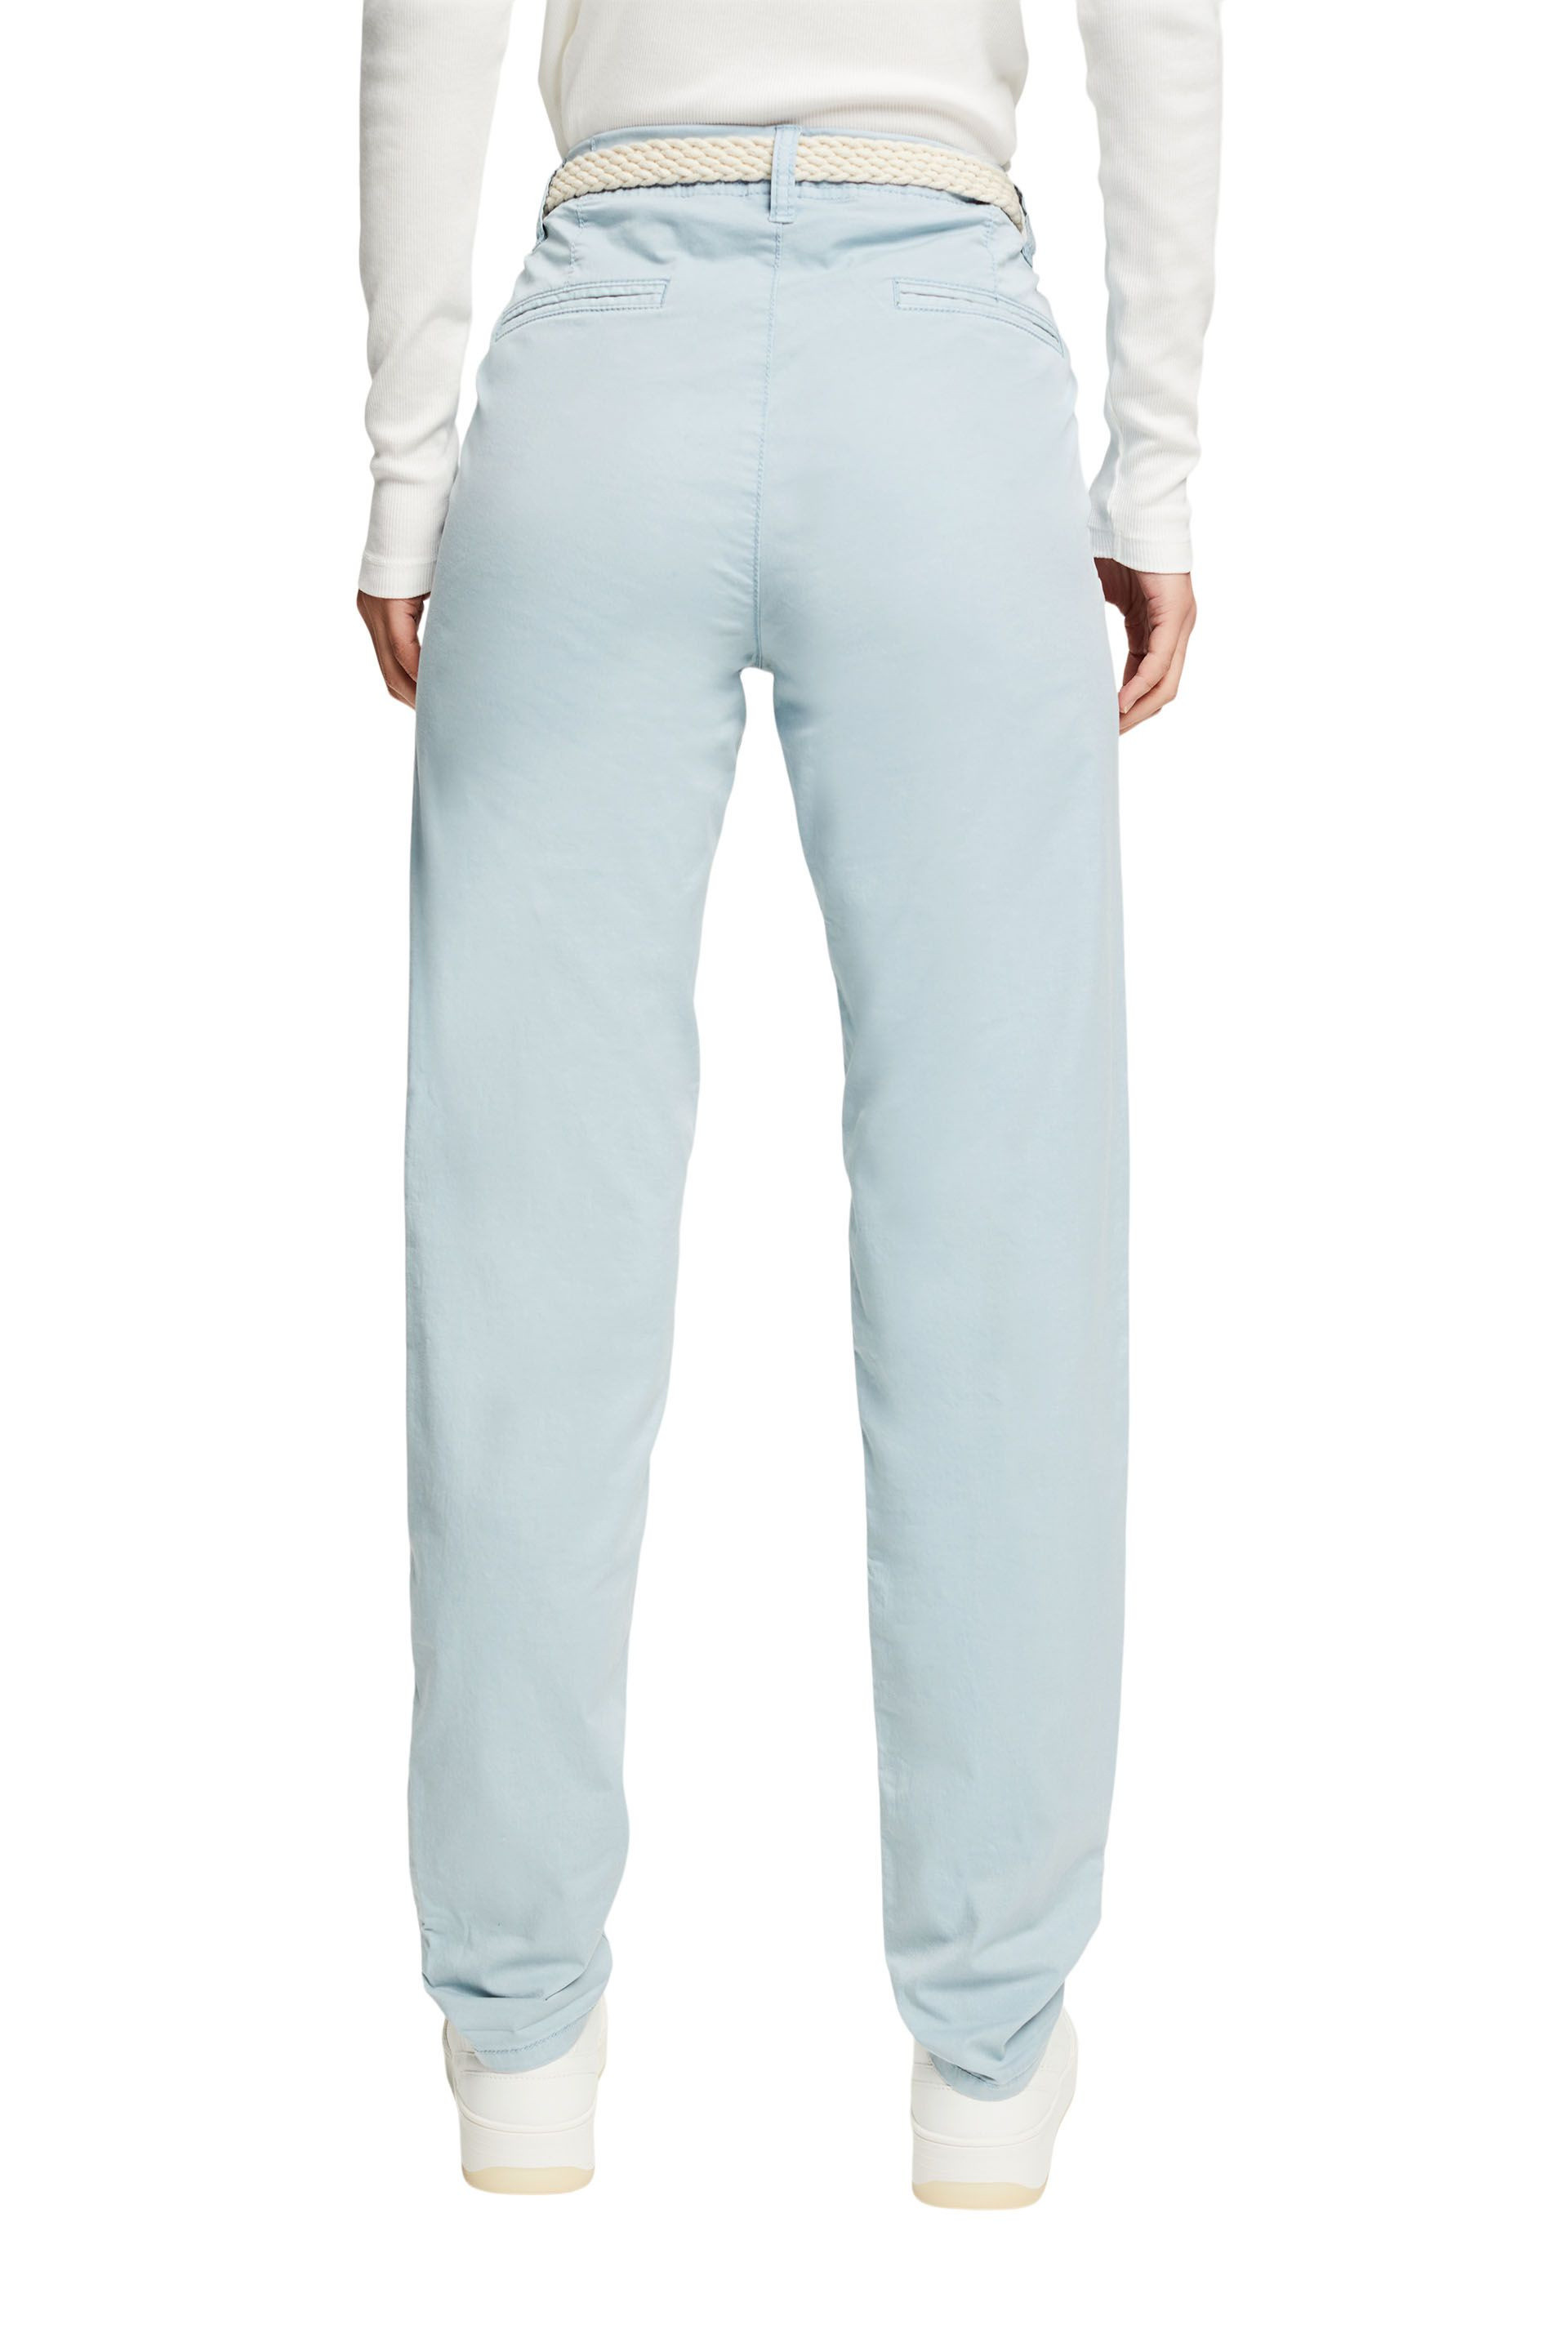 Pantaloni chino con cintura intrecciata, Azzurro celeste, large image number 2